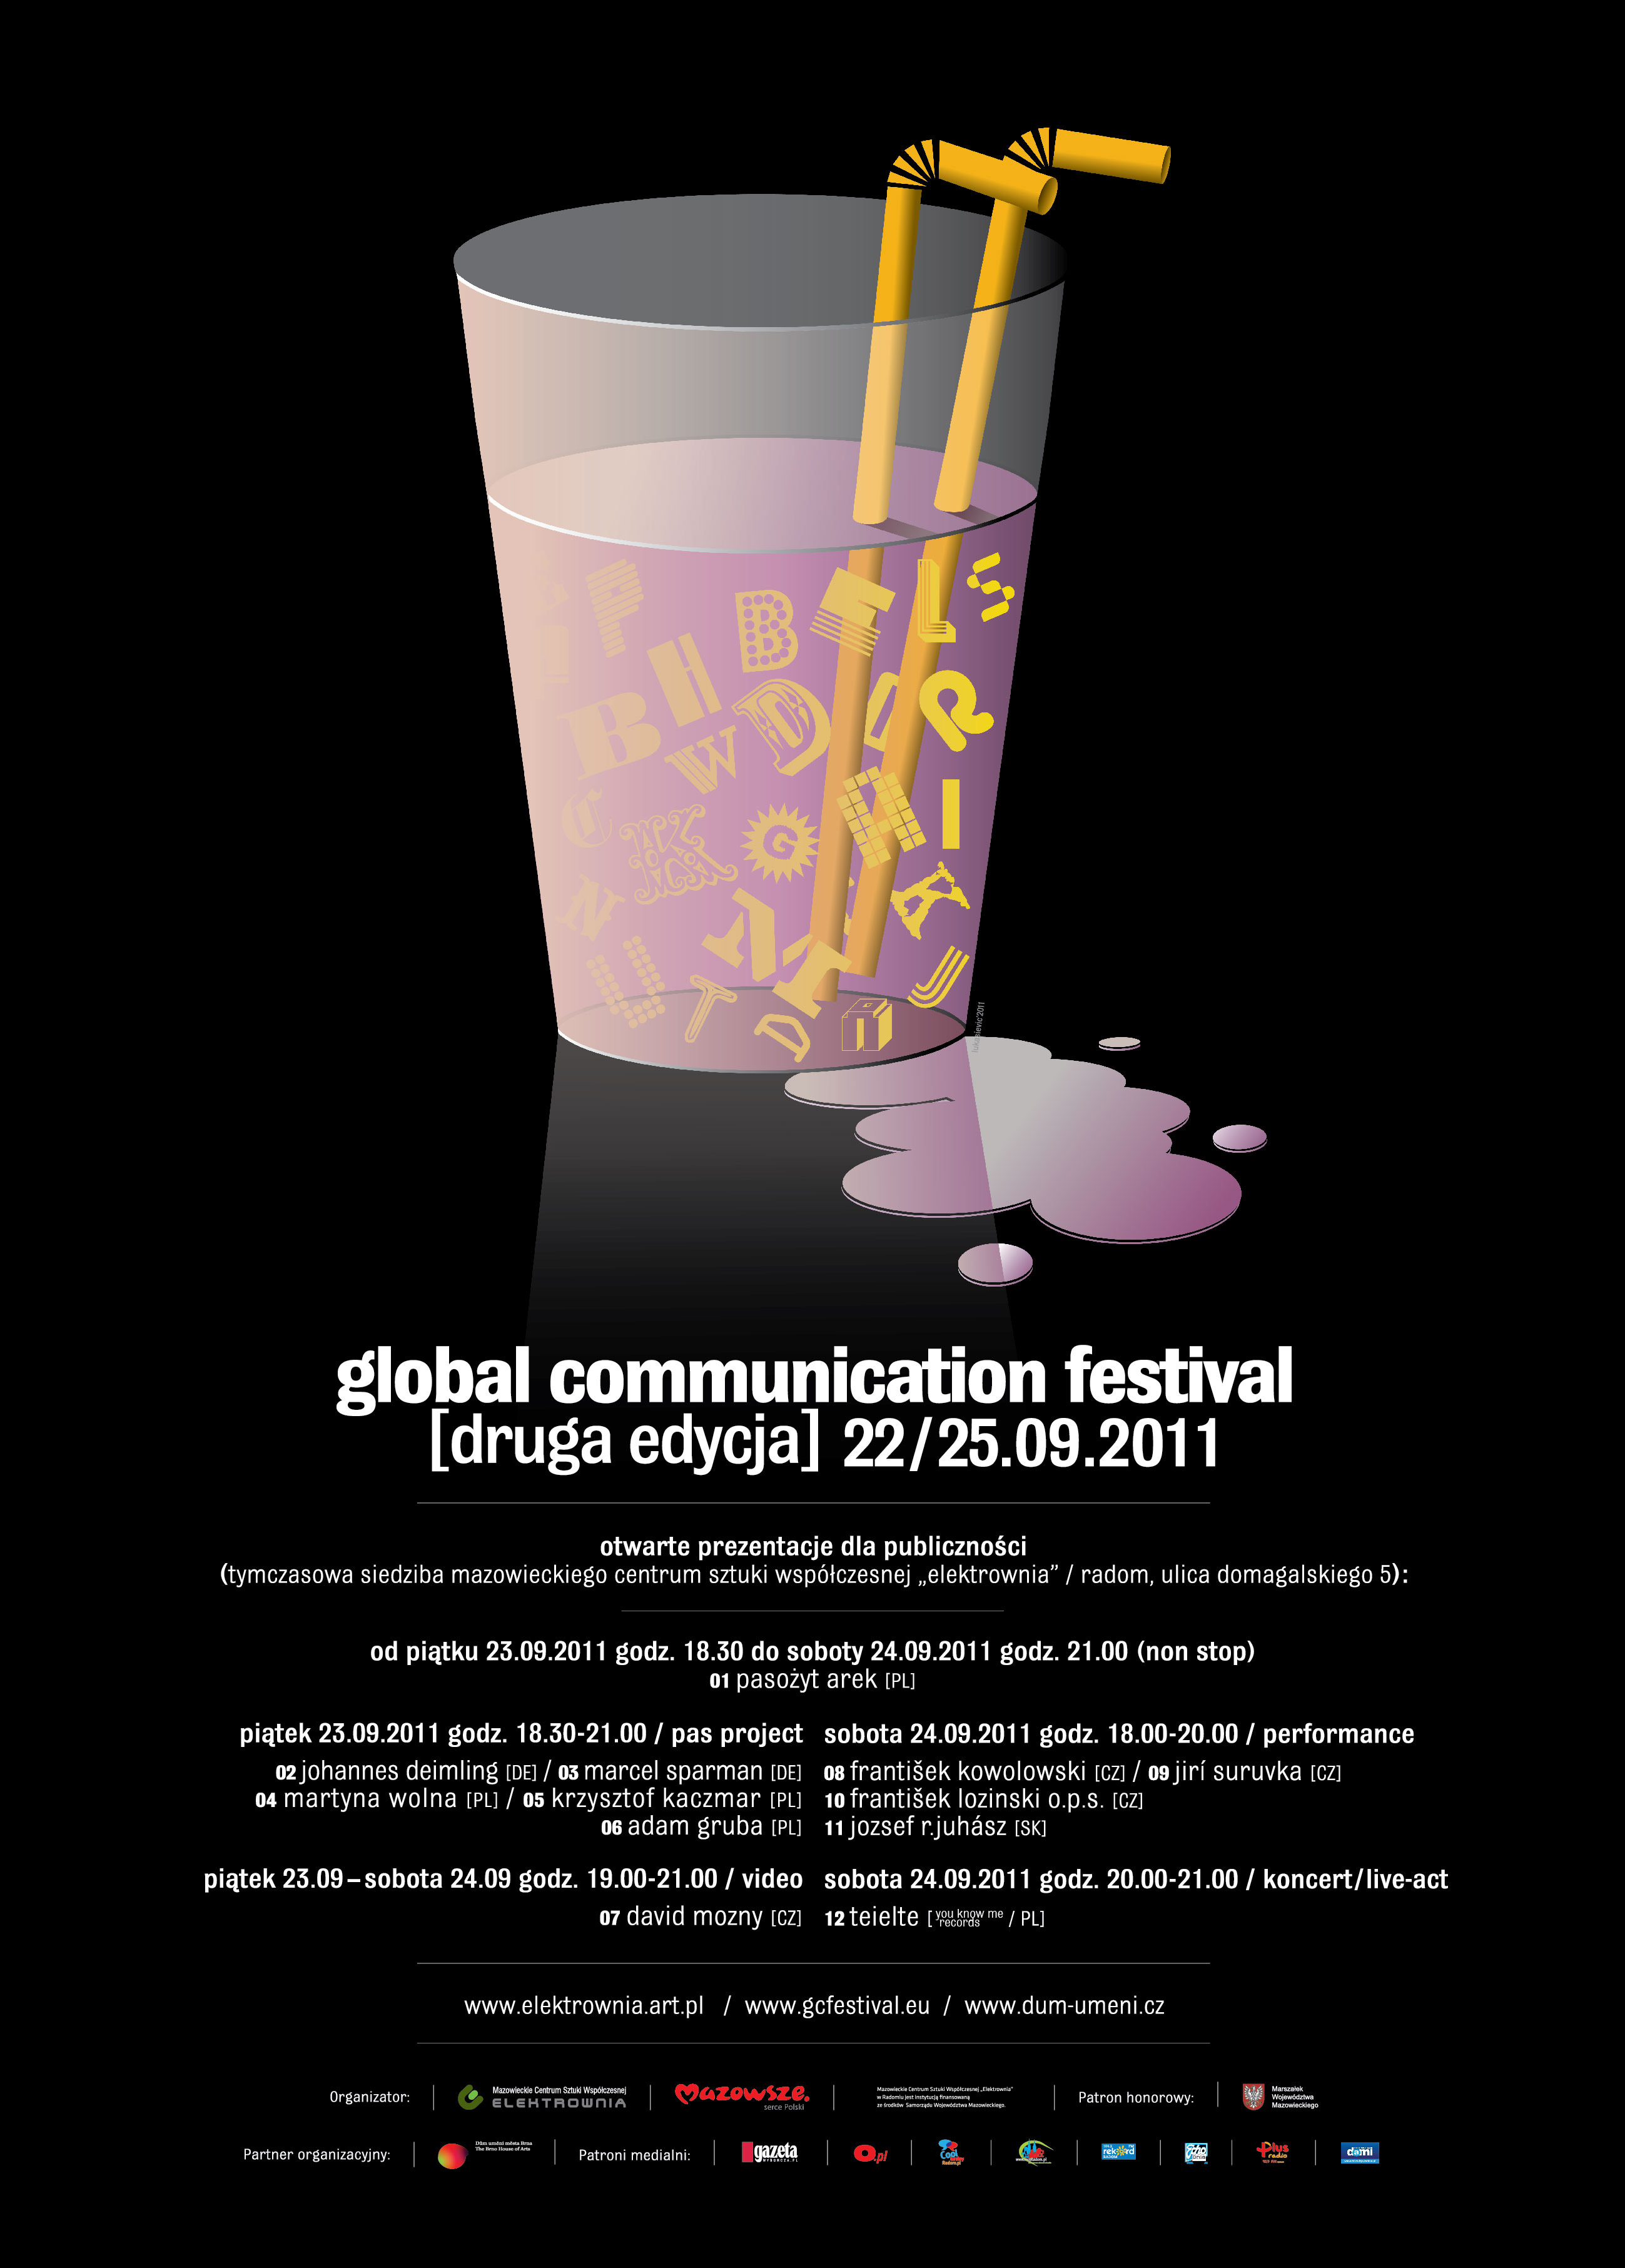 Global Communication Festival 2011 (źródło: materiał prasowy CSW)